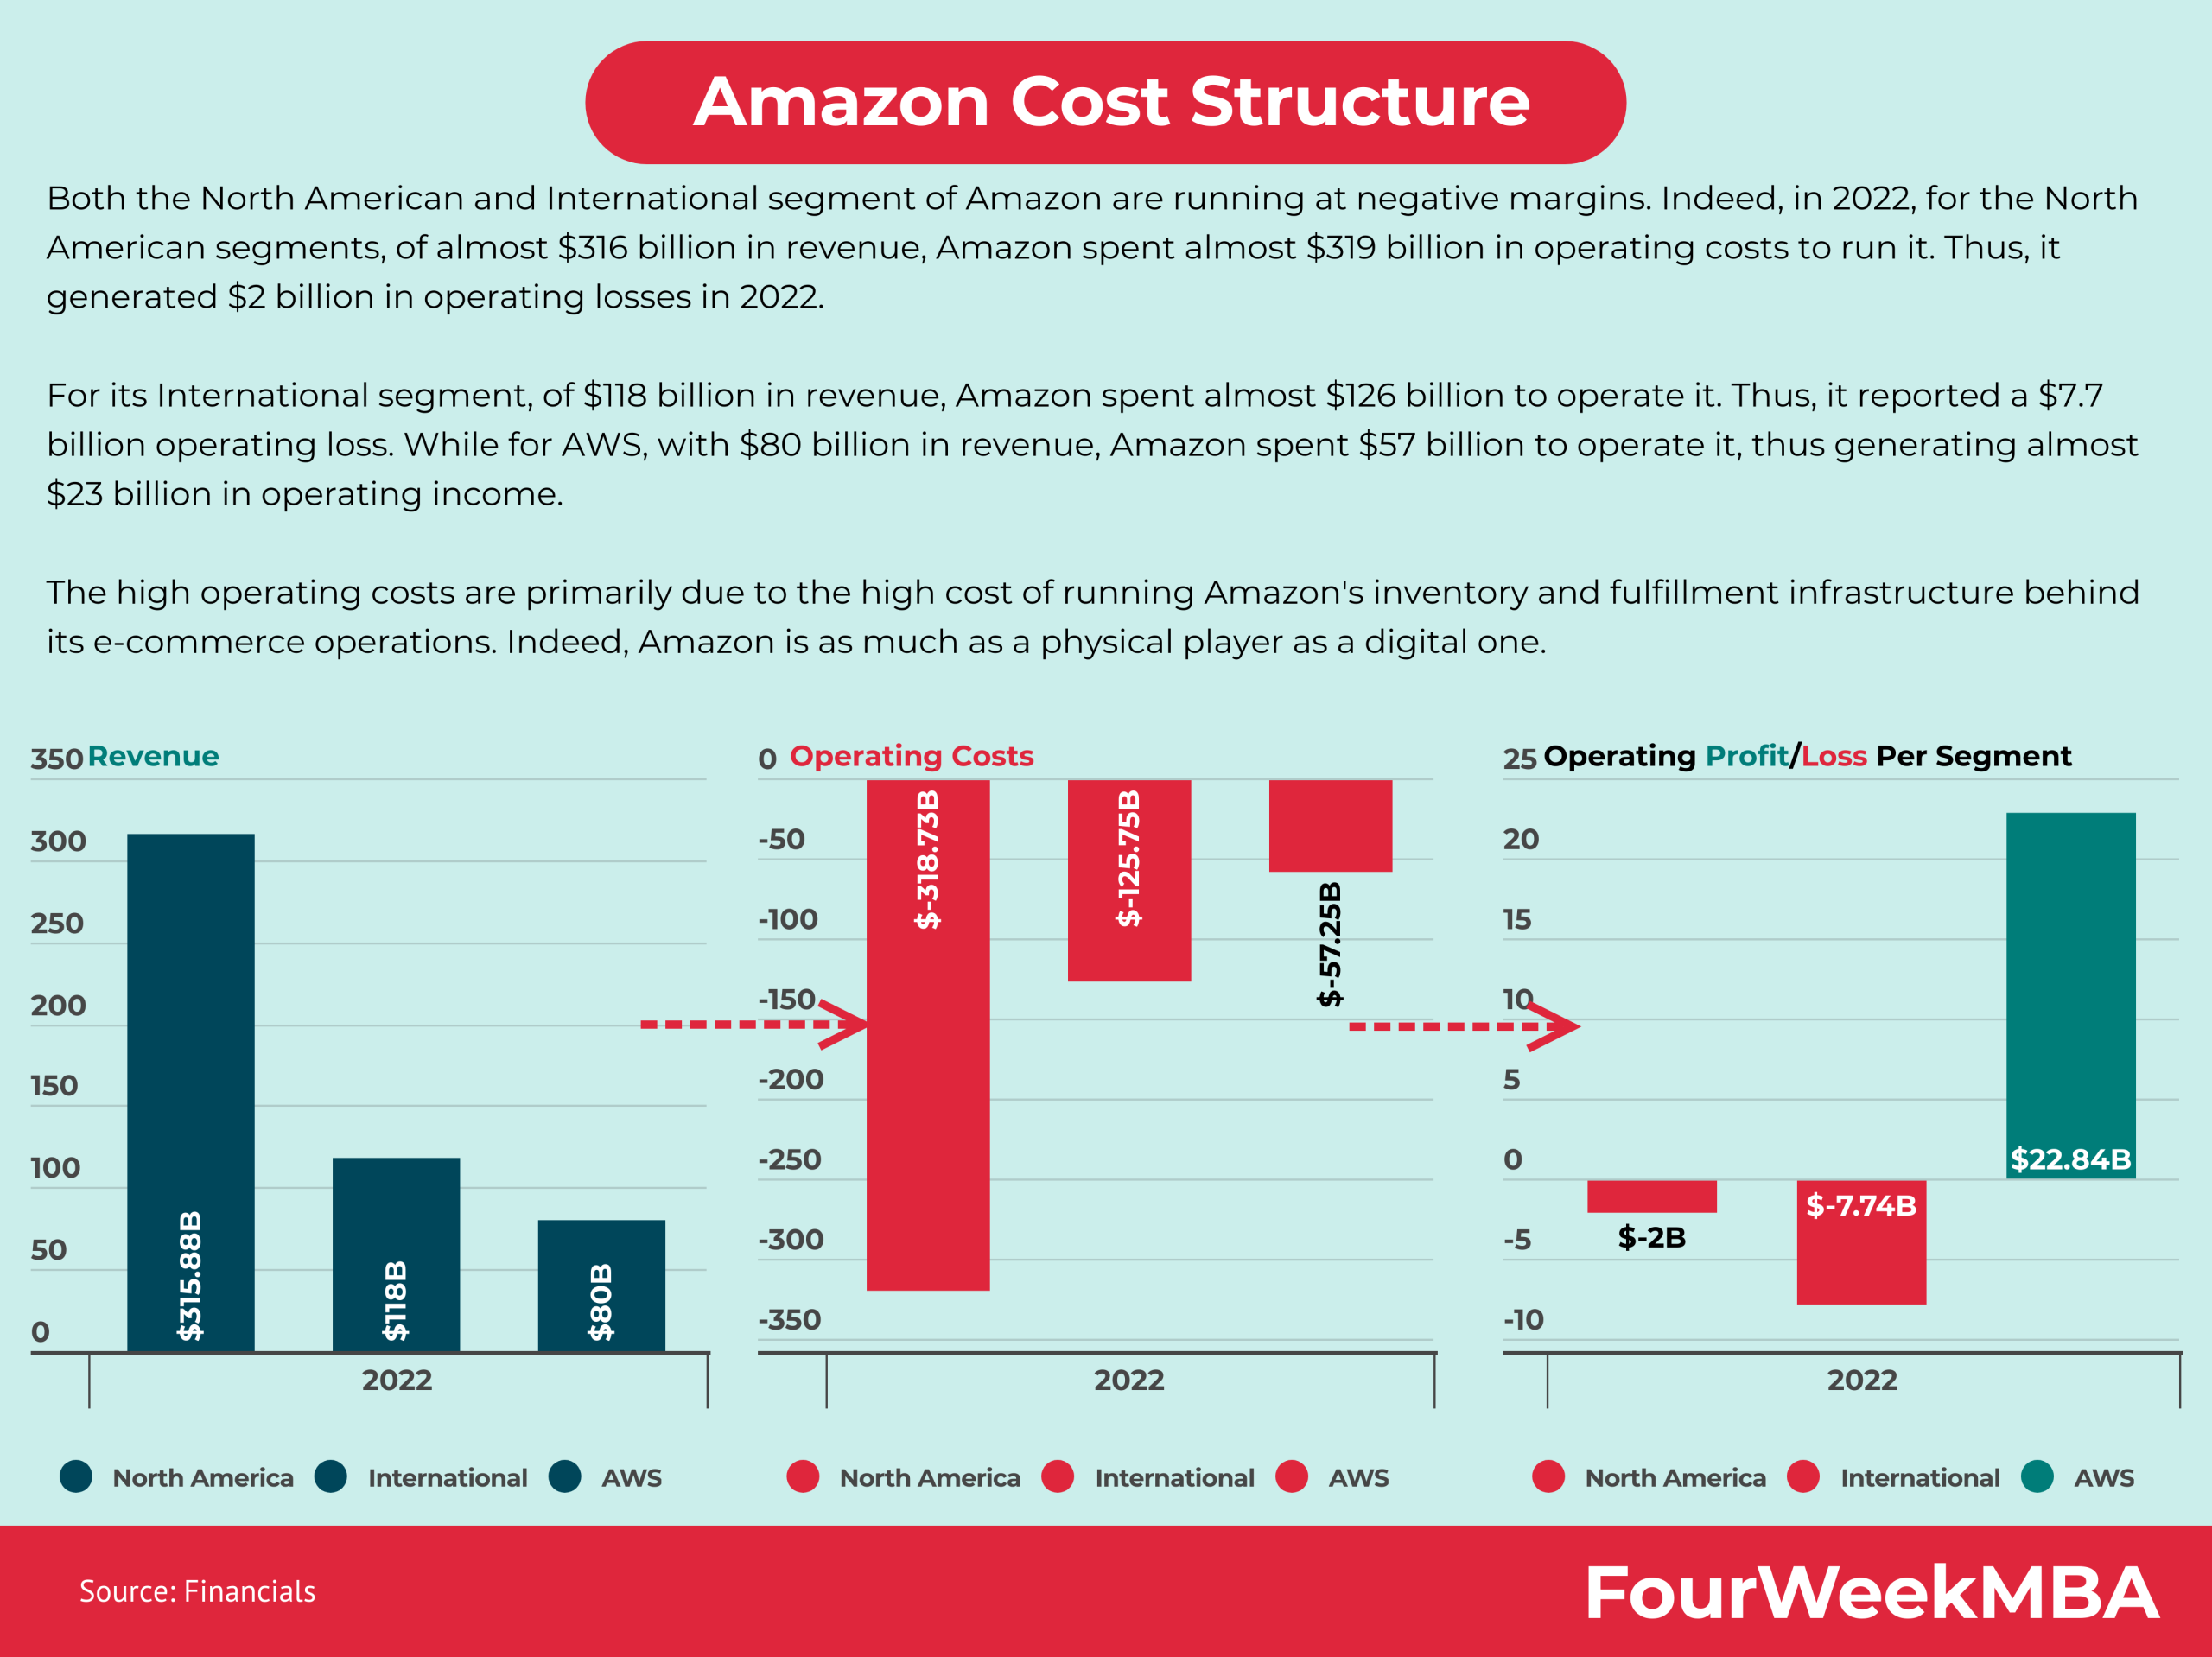 6. Predicting Future Trends in Amazon's Share Cost